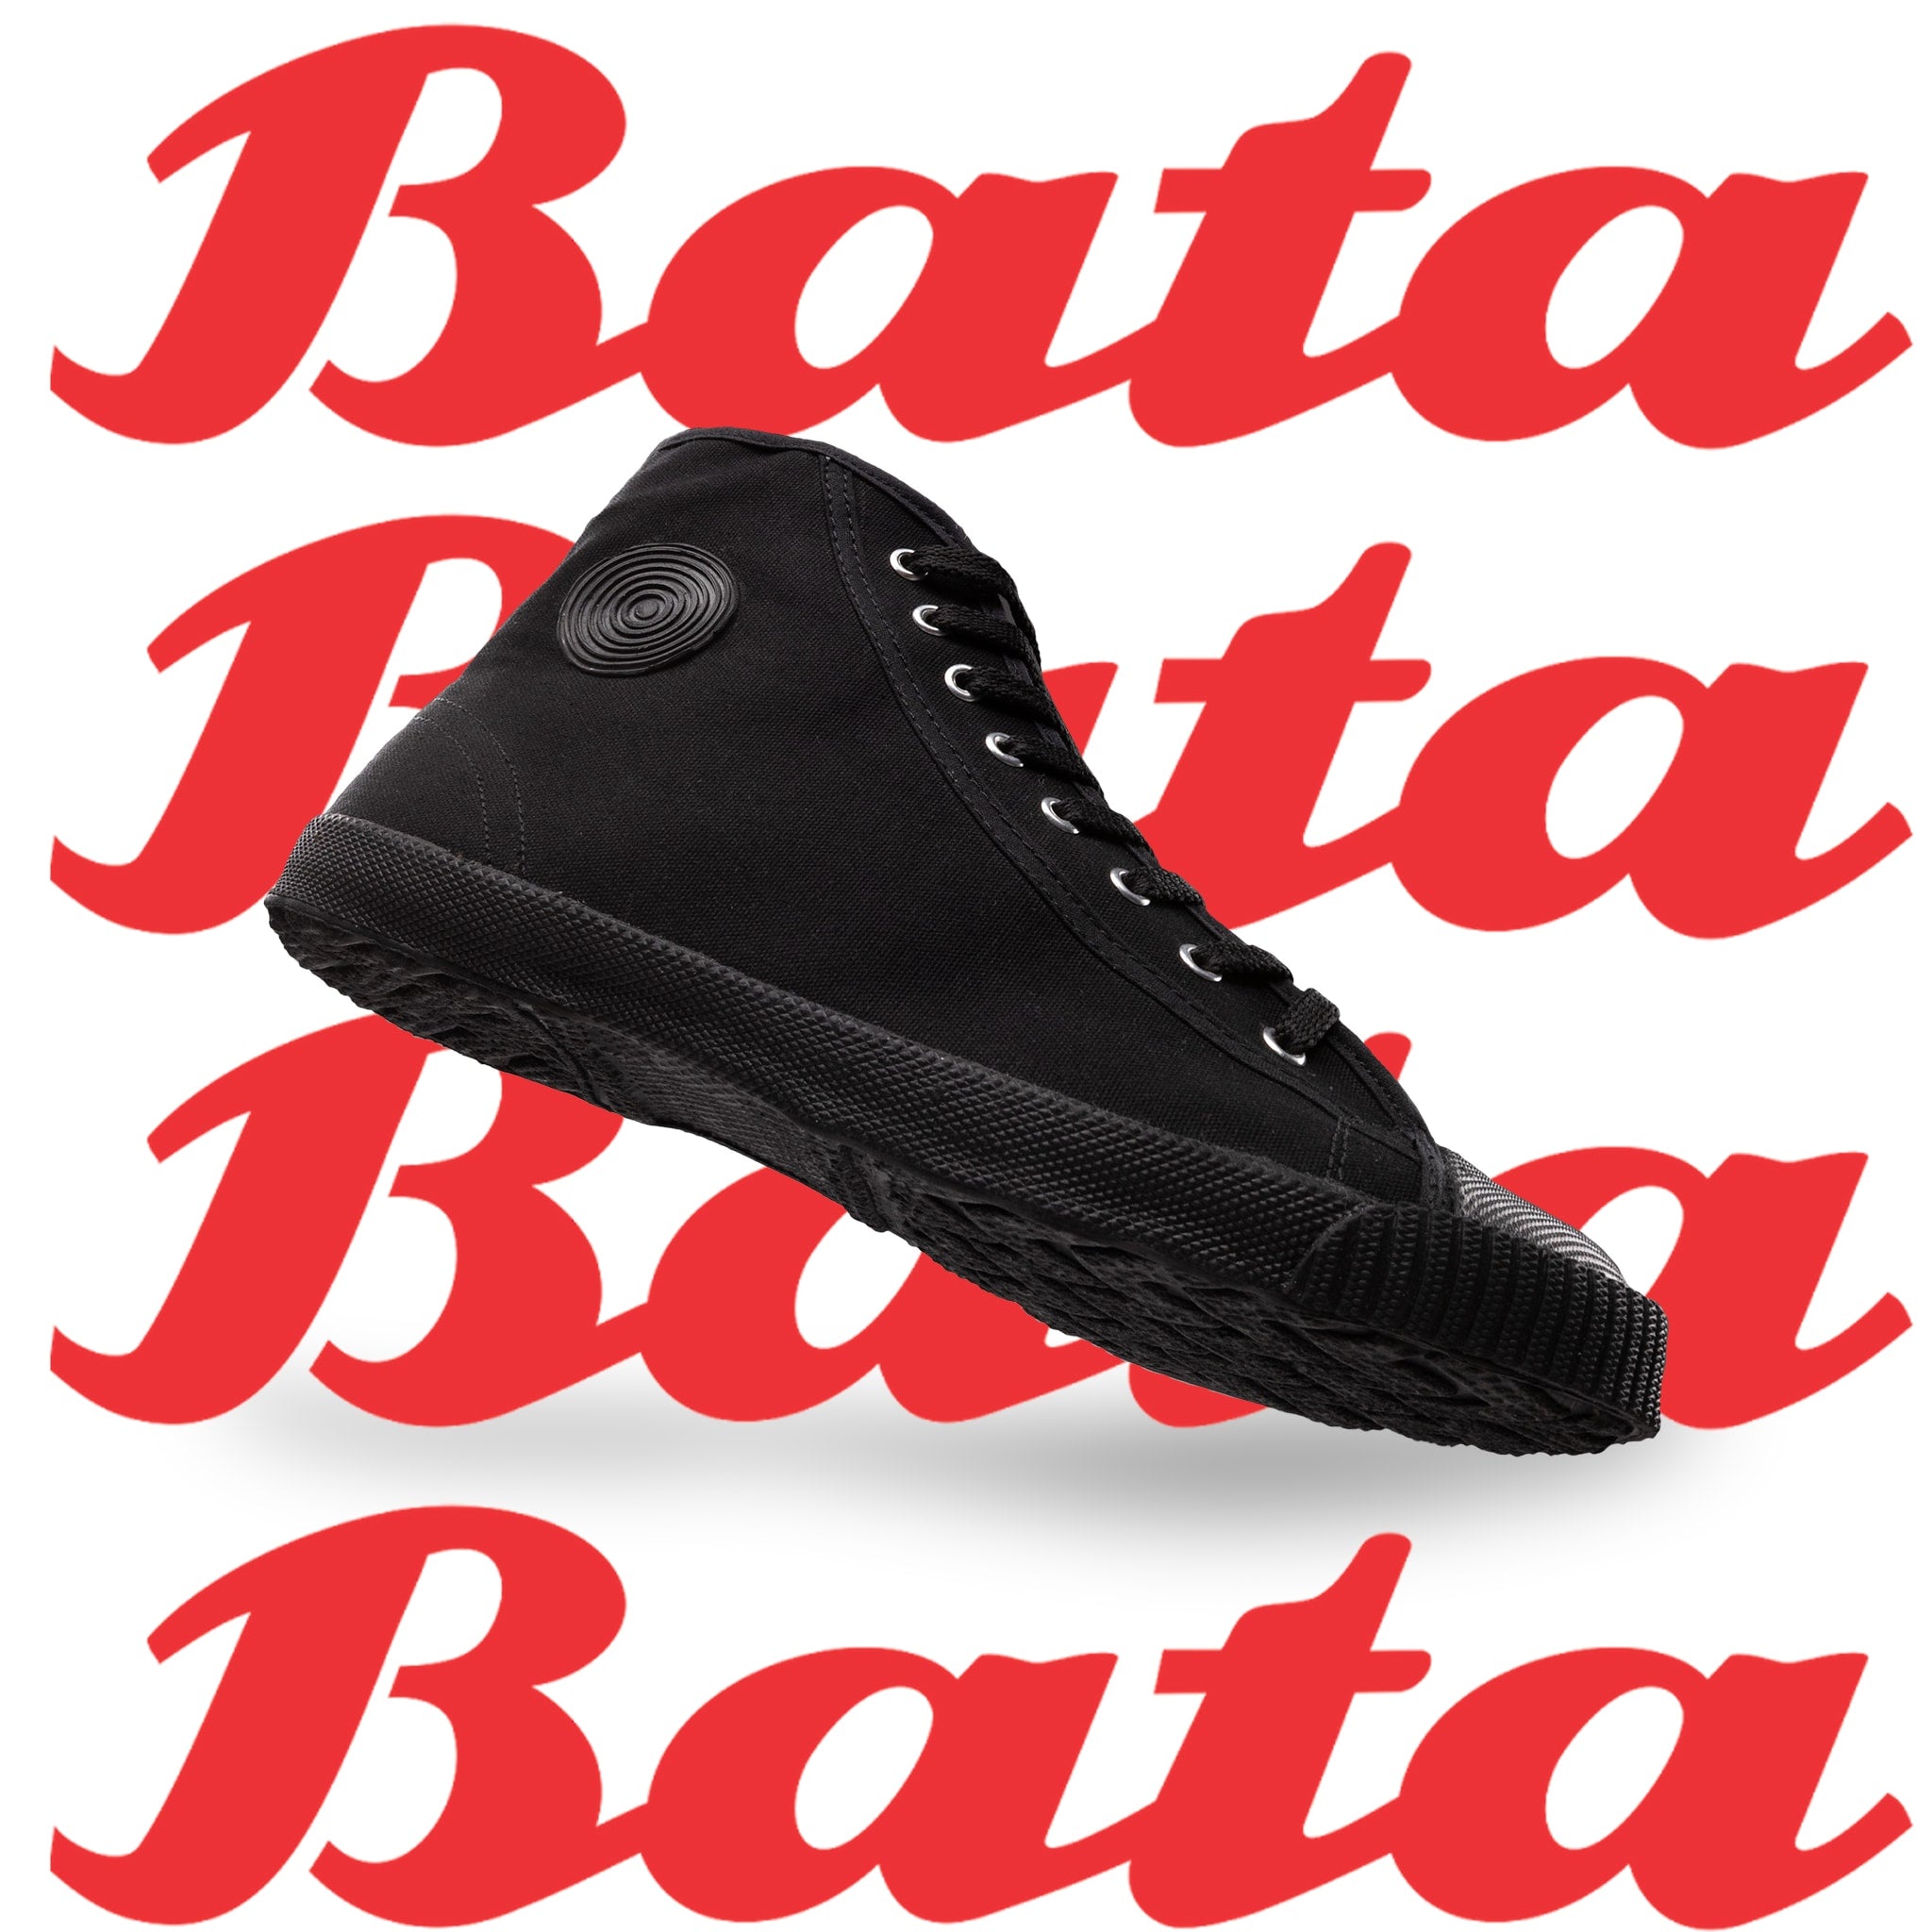 Buy Bata Mens Sa 05 Black Formal Shoes (8216614),UK 8 at Amazon.in